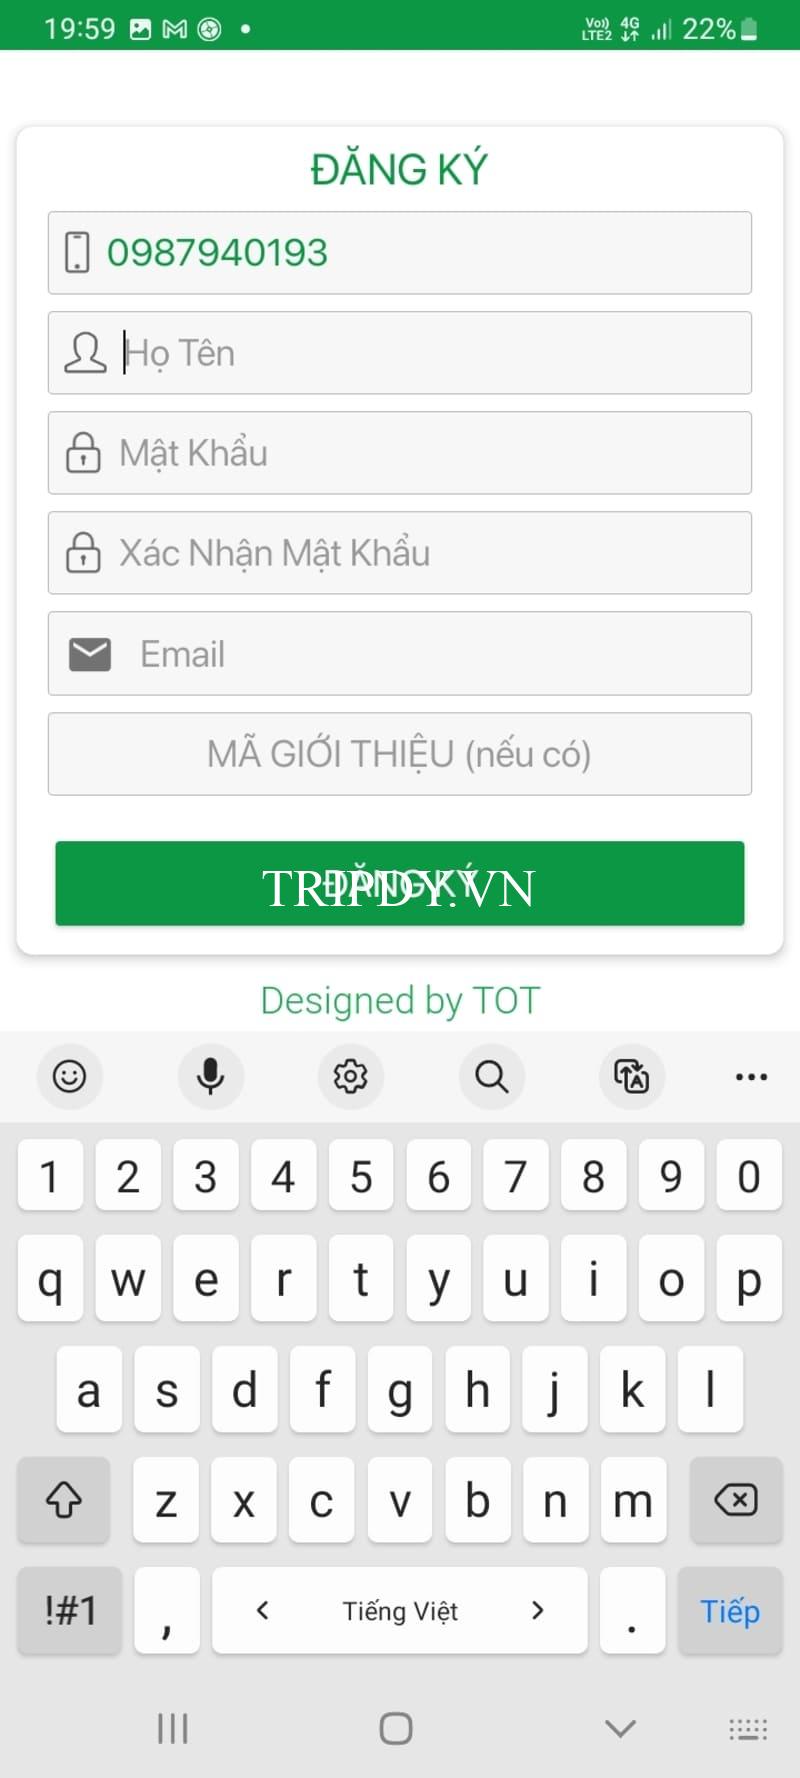 Taxi Mai Linh Biên Hòa Đồng Nai: Số điện thoại tổng đài, giá cước